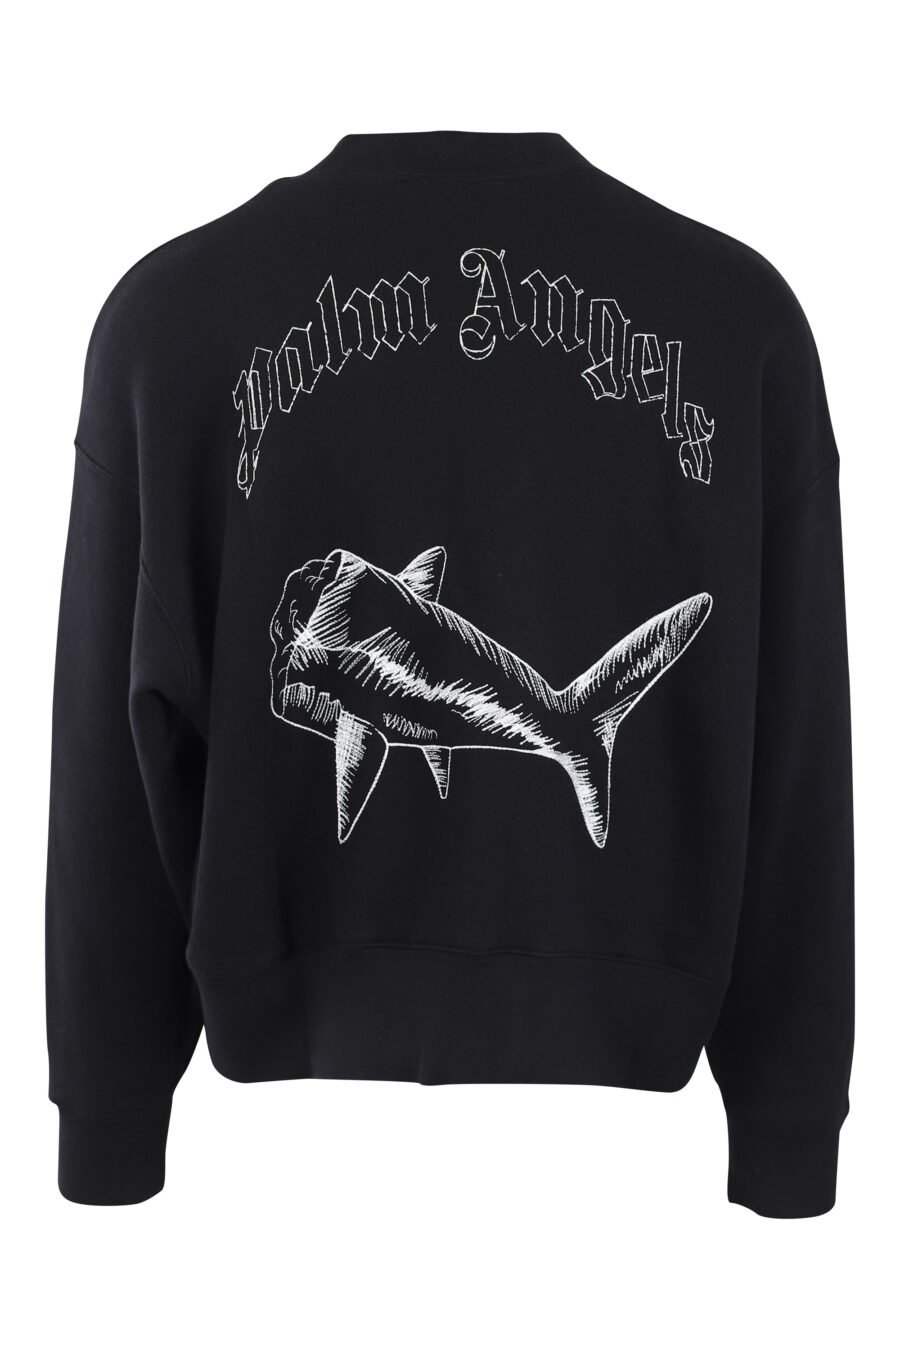 Sweat noir avec logo et requin brodés en blanc dans le dos - IMG 2566